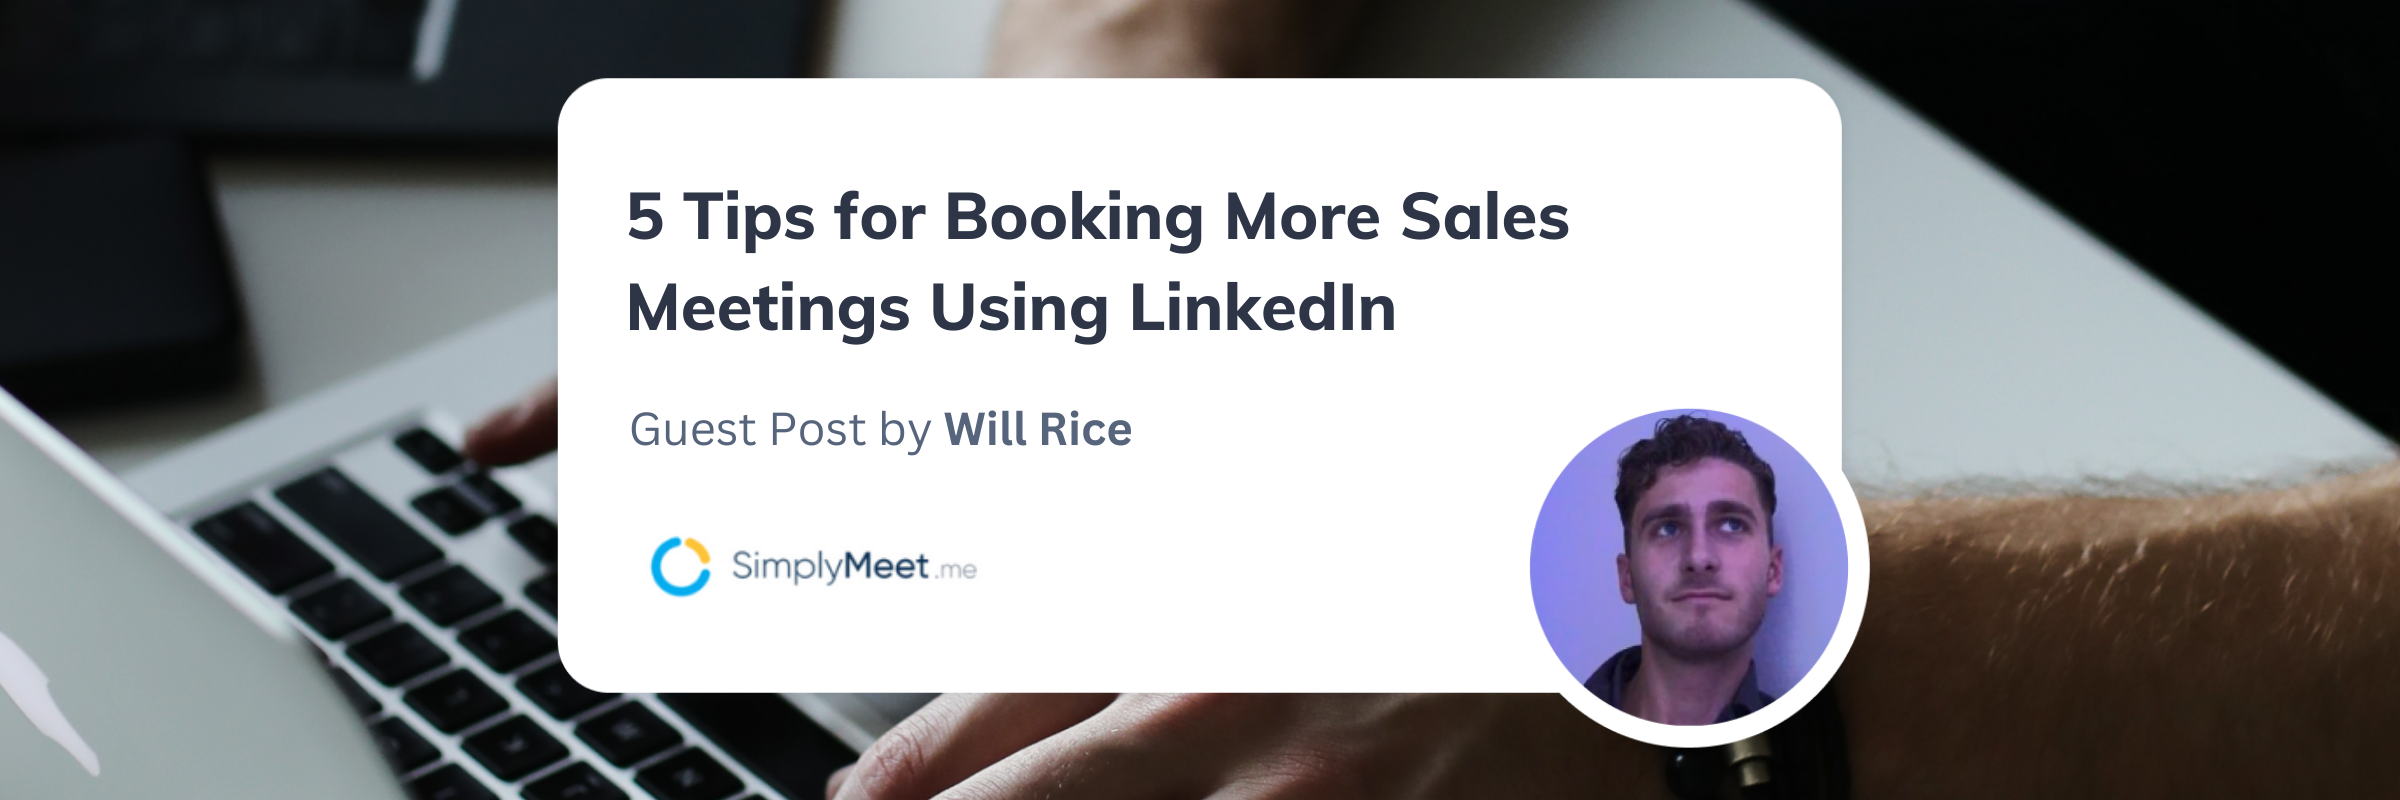 Booking more sales meetings using LinkedIn